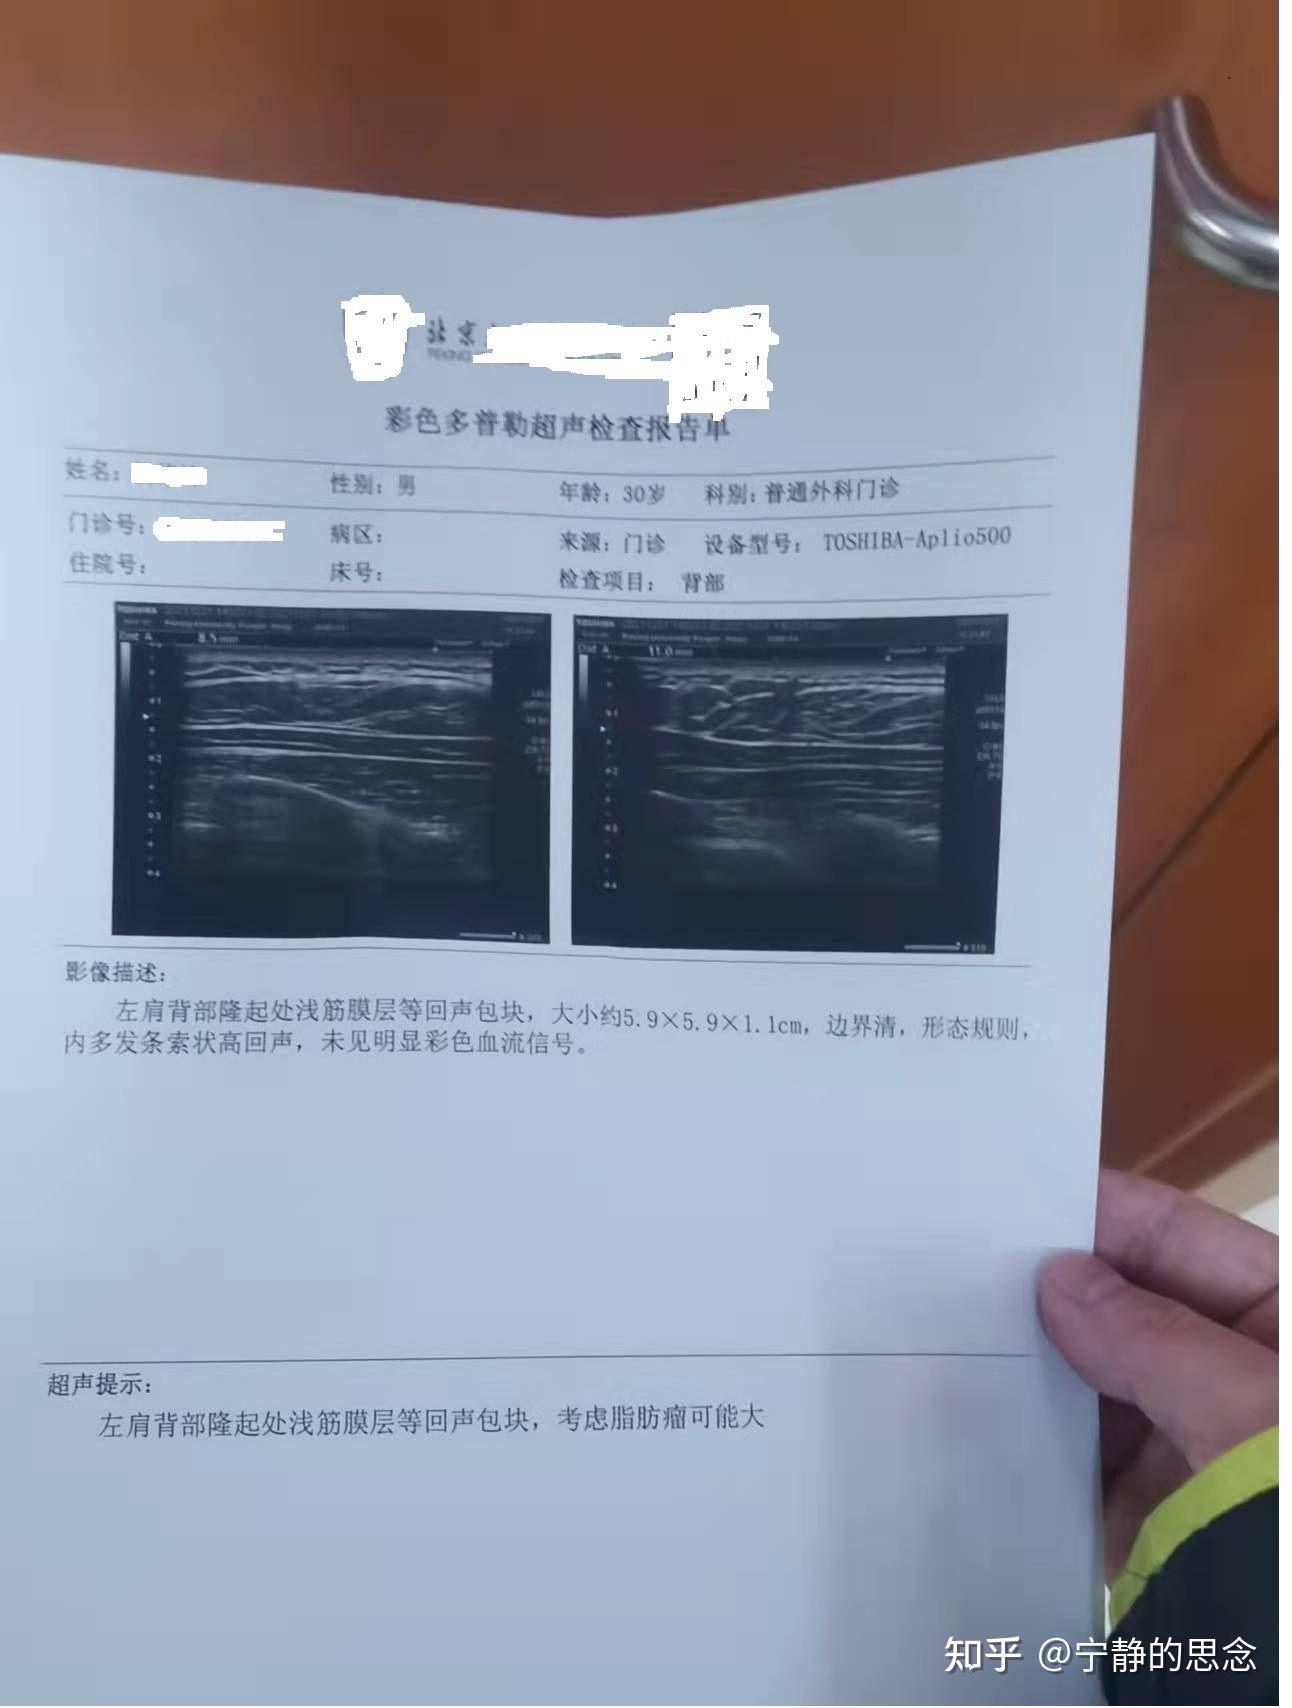 我首先在北京某医院做了彩超,初步结论是脂肪瘤可能性大,并得到了大小